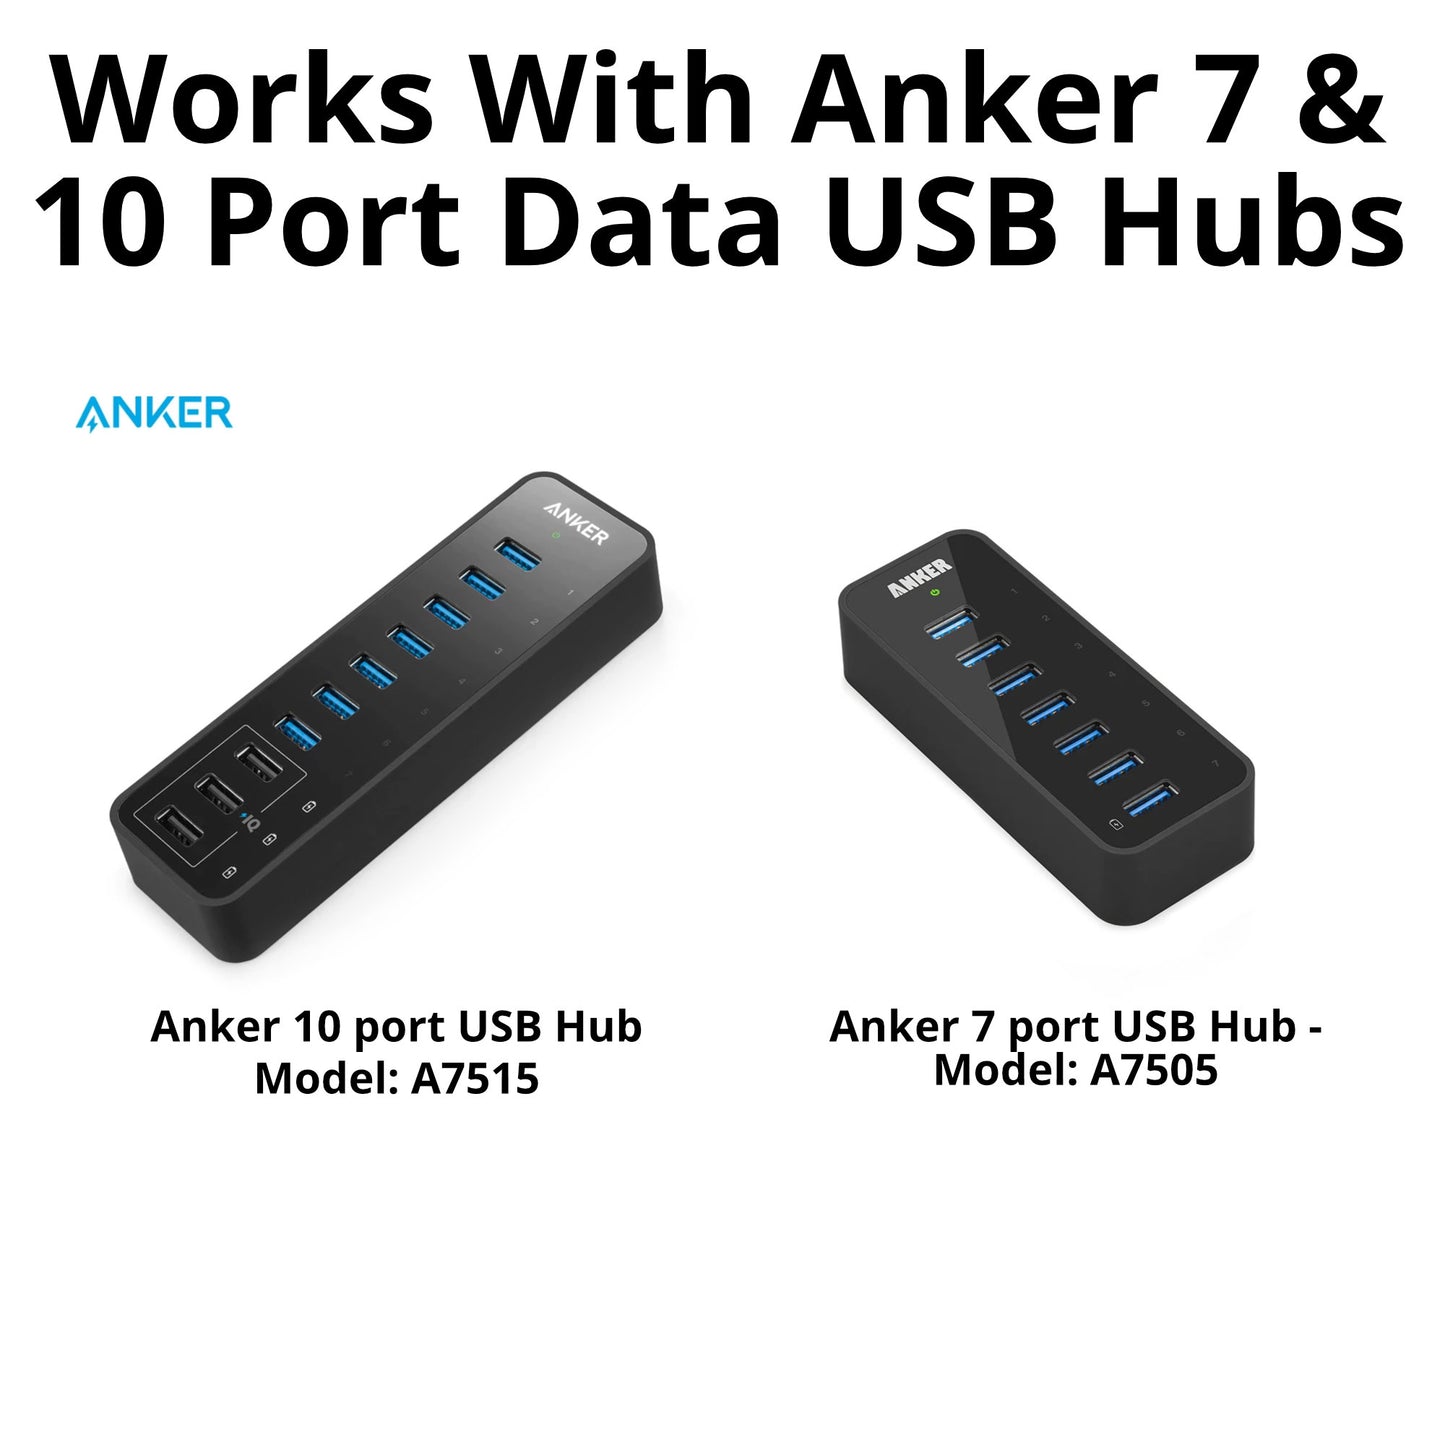 Wall / Desk Mount for Anker 7 or 10 port USB Data Hub